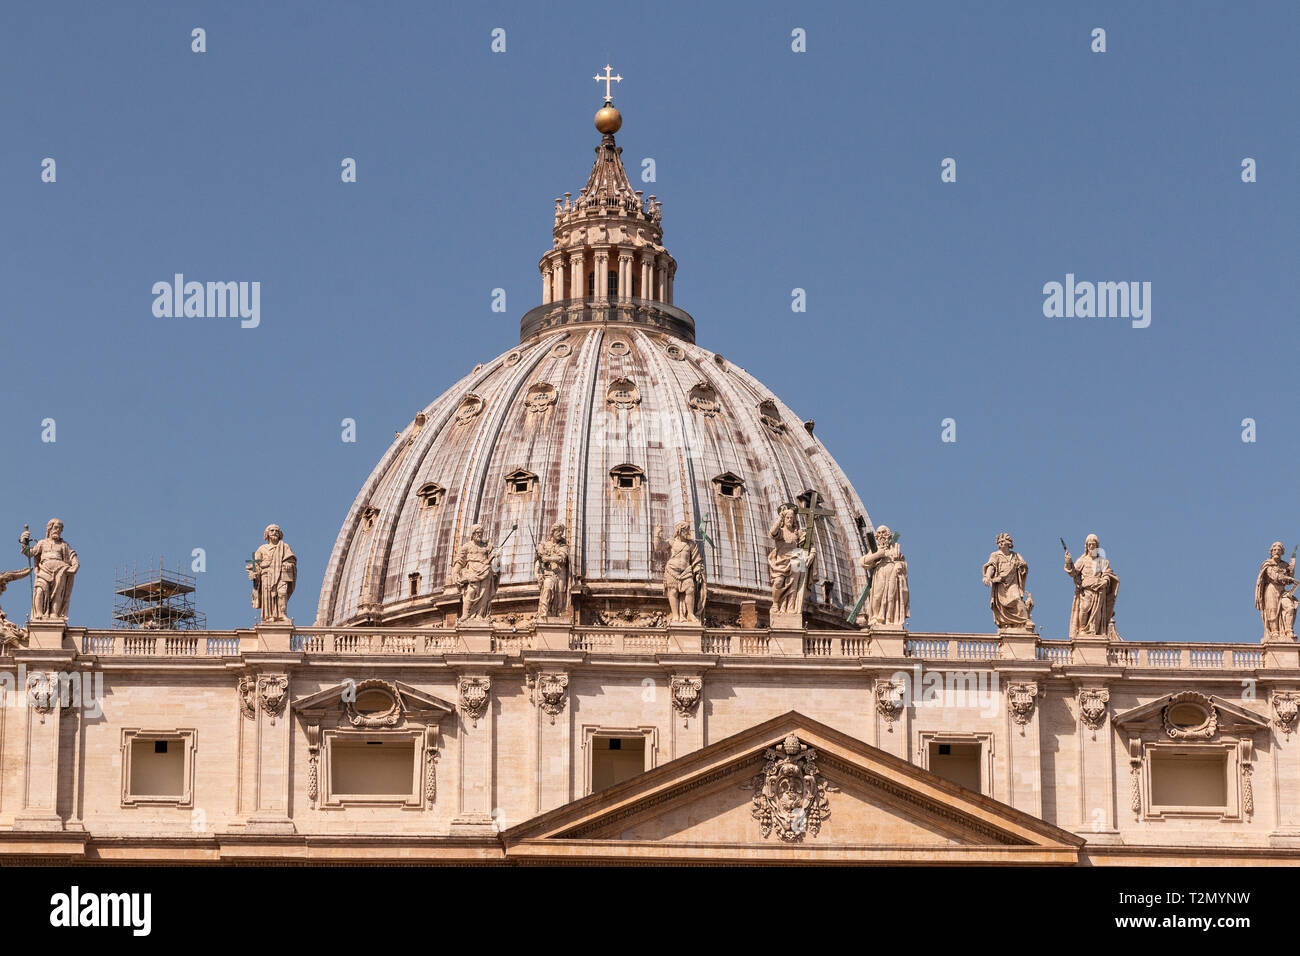 Primeras figuras en el techo de San Pedro Basilca,mostrando los principios fundadores de la Cristiandad. La cúpula más grande del mundo es el Michelangelo. Foto de stock